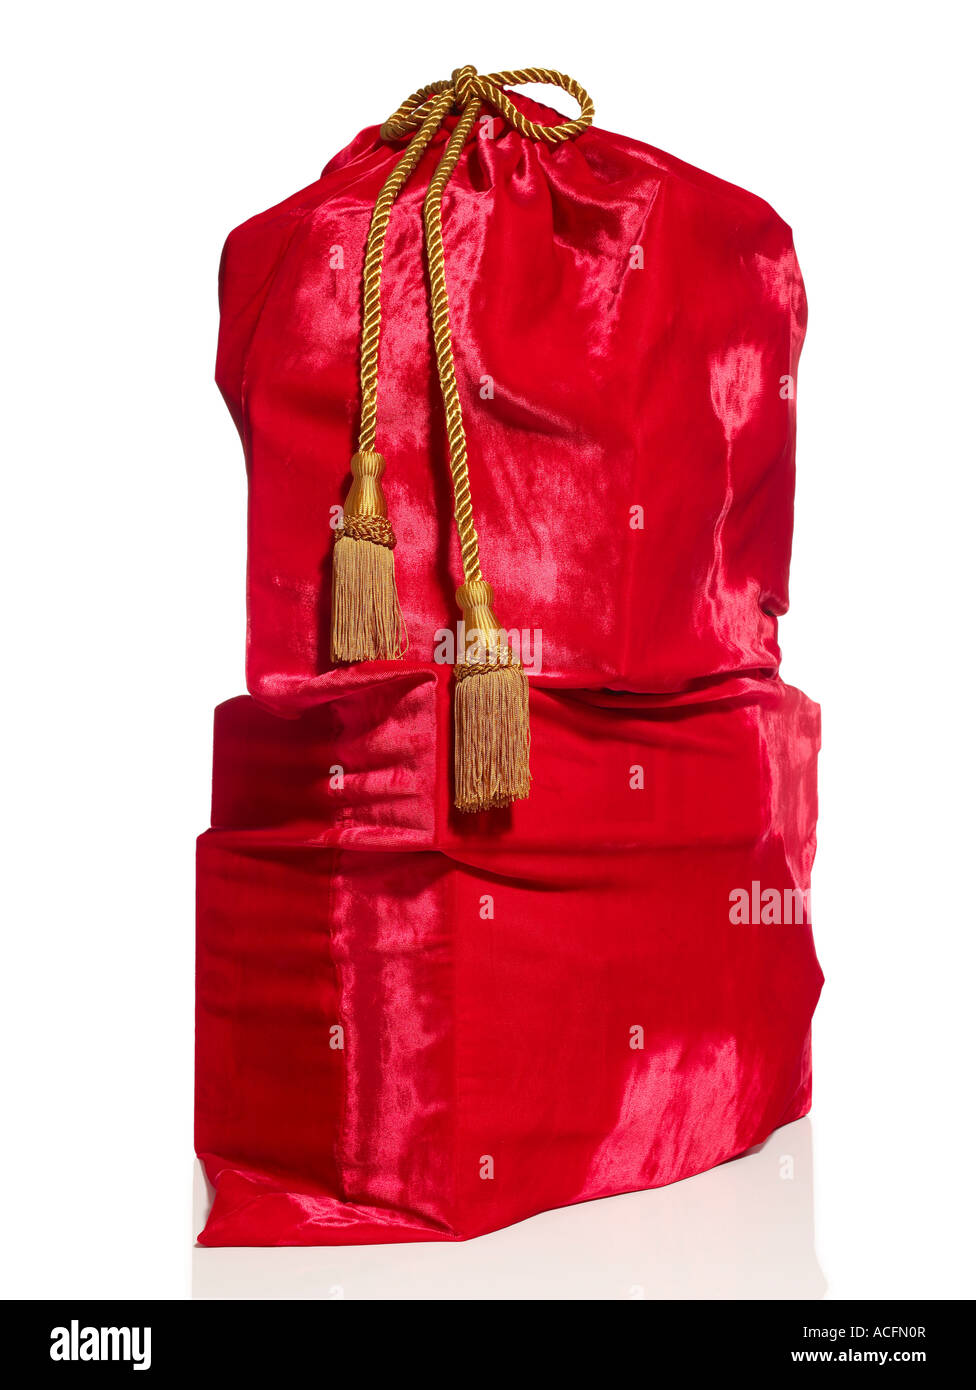 Santa's Bag Stock Photo